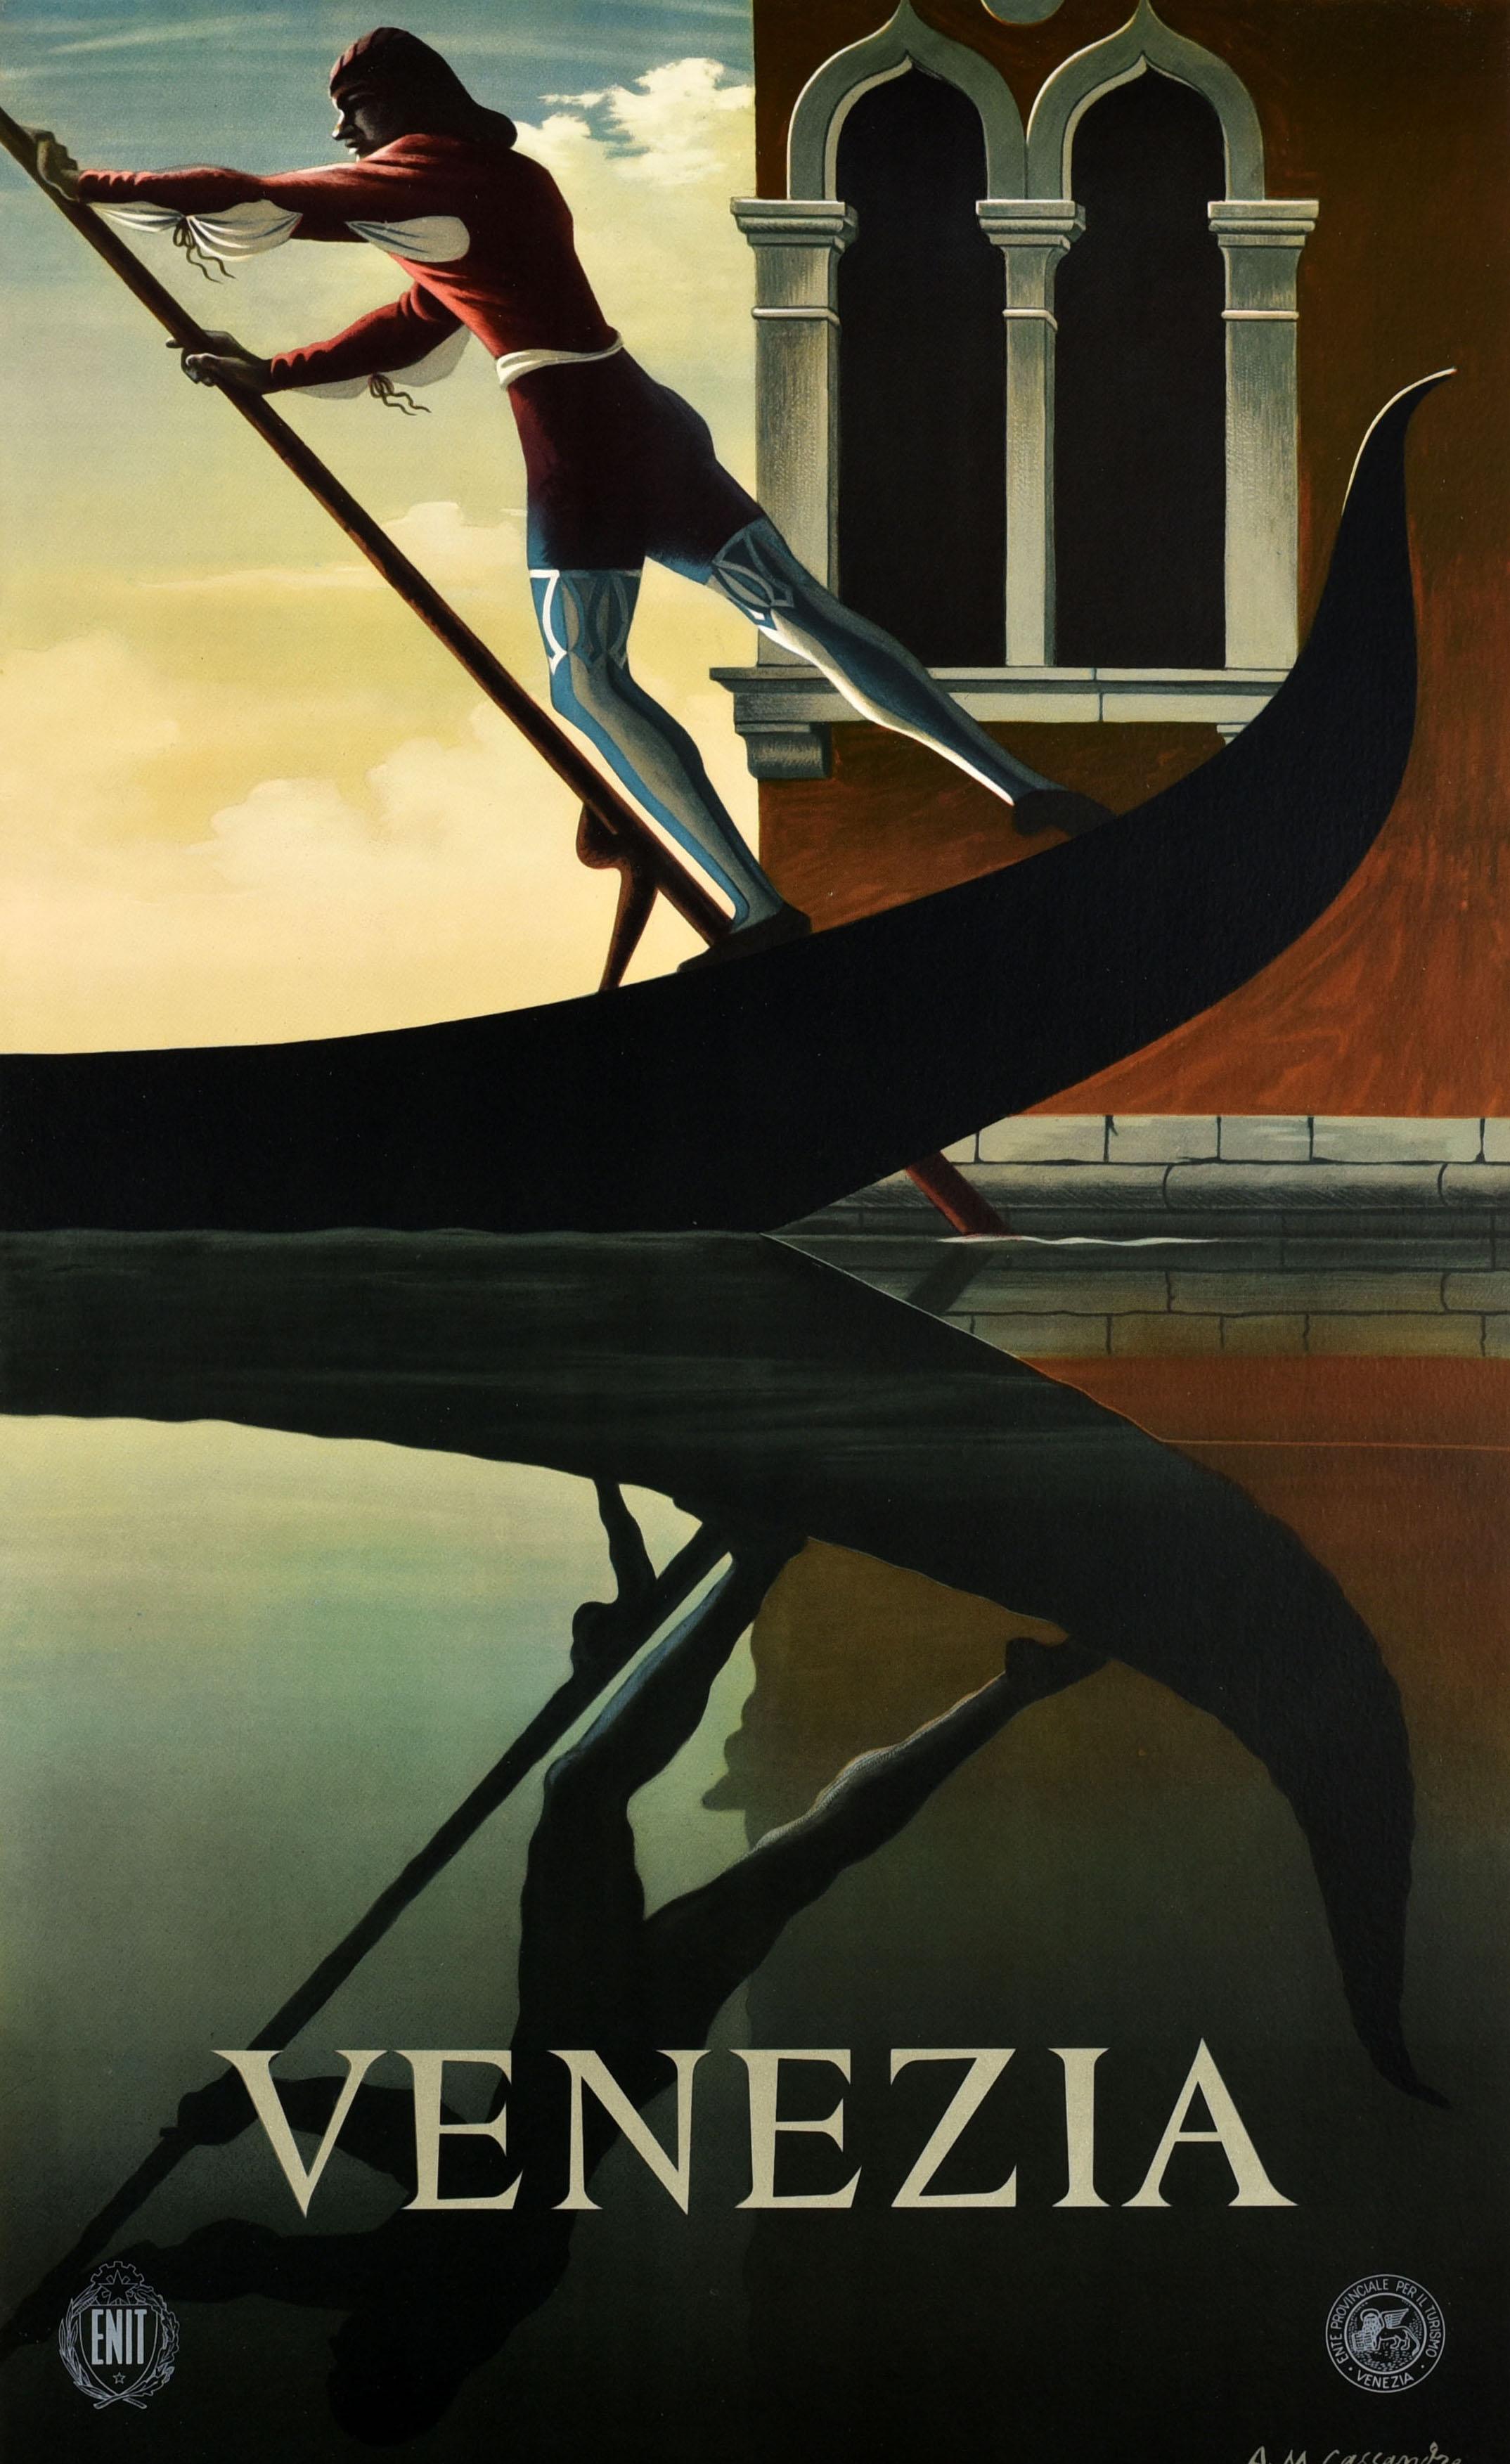 Original-Reise-Werbeplakat des bekannten Plakatkünstlers A.M. Cassandre (Adolphe Mouron Cassandre, 1901-1968) wurde 1951 für die Grafikdesign-Konferenz in Venedig veröffentlicht und vom italienischen Fremdenverkehrsamt ENIT zur Werbung für die Stadt